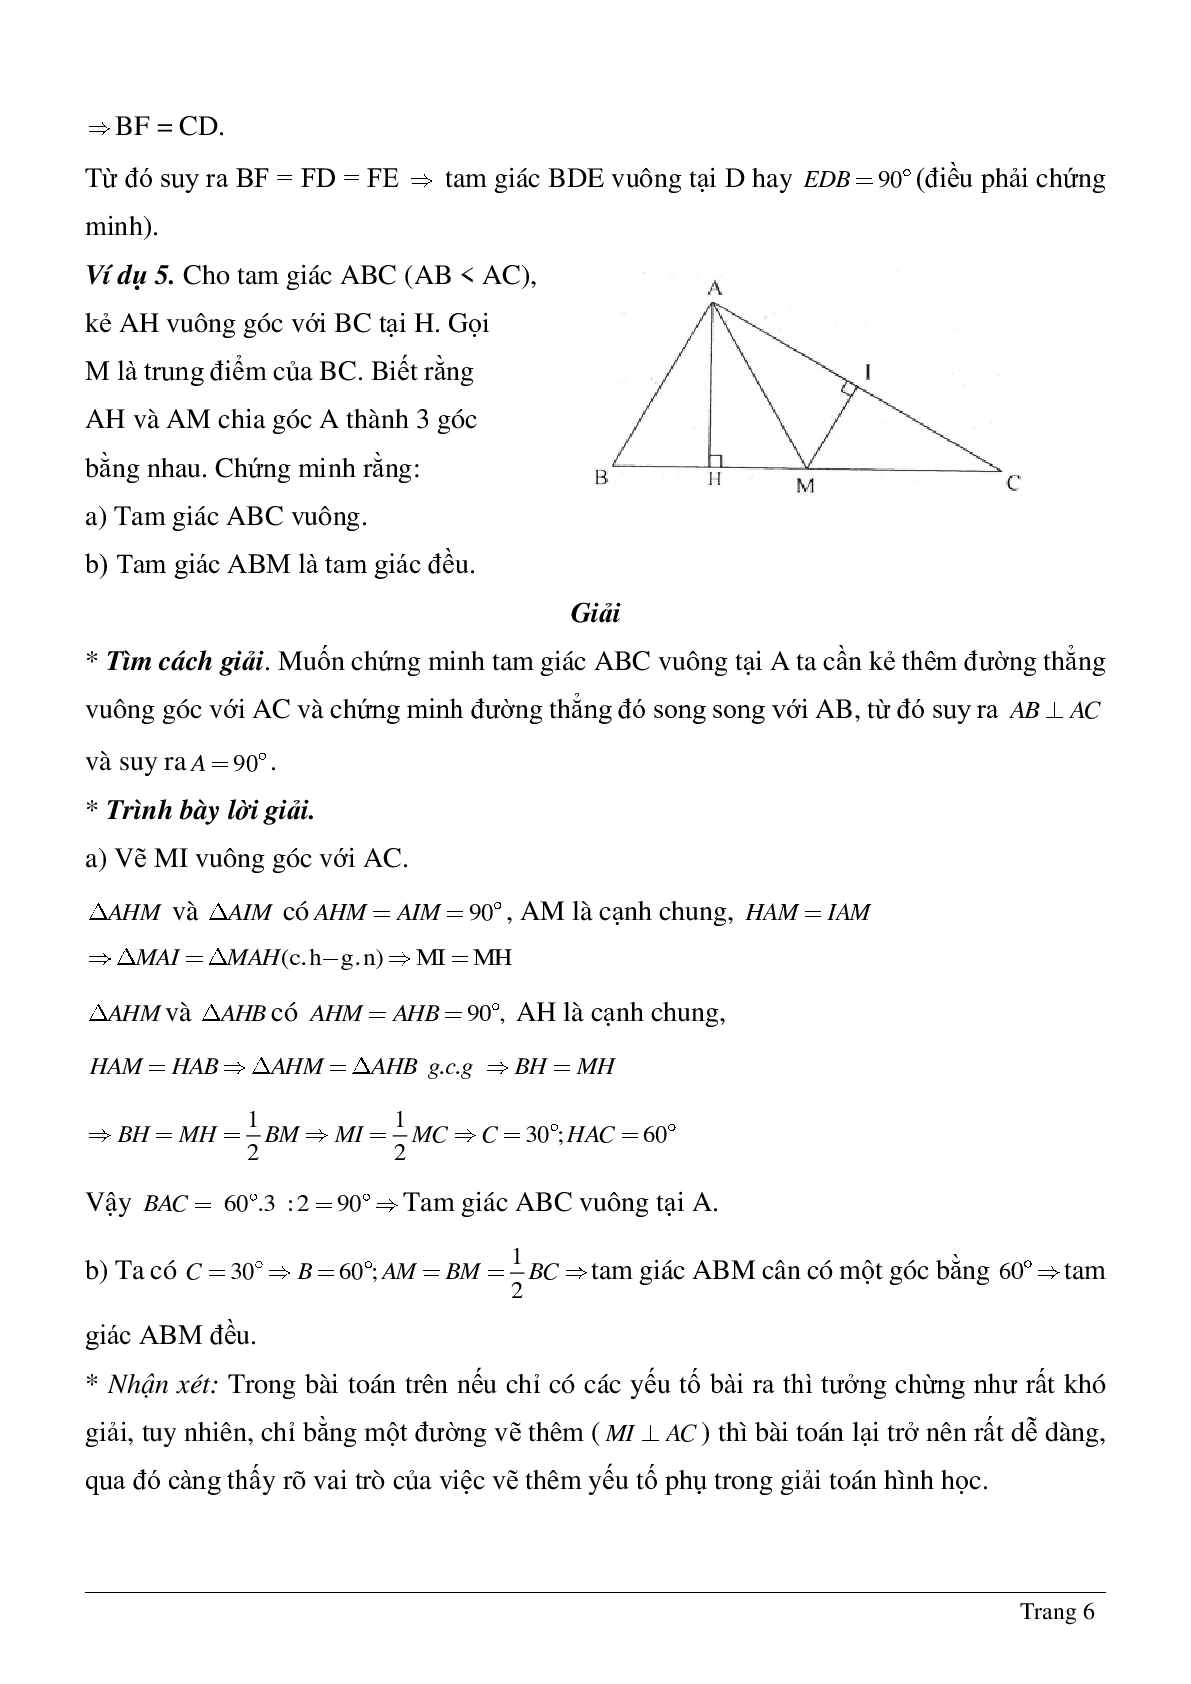 Phương pháp giải về Vẽ hình phụ để giải các bài toán hình học có lời giải (trang 6)